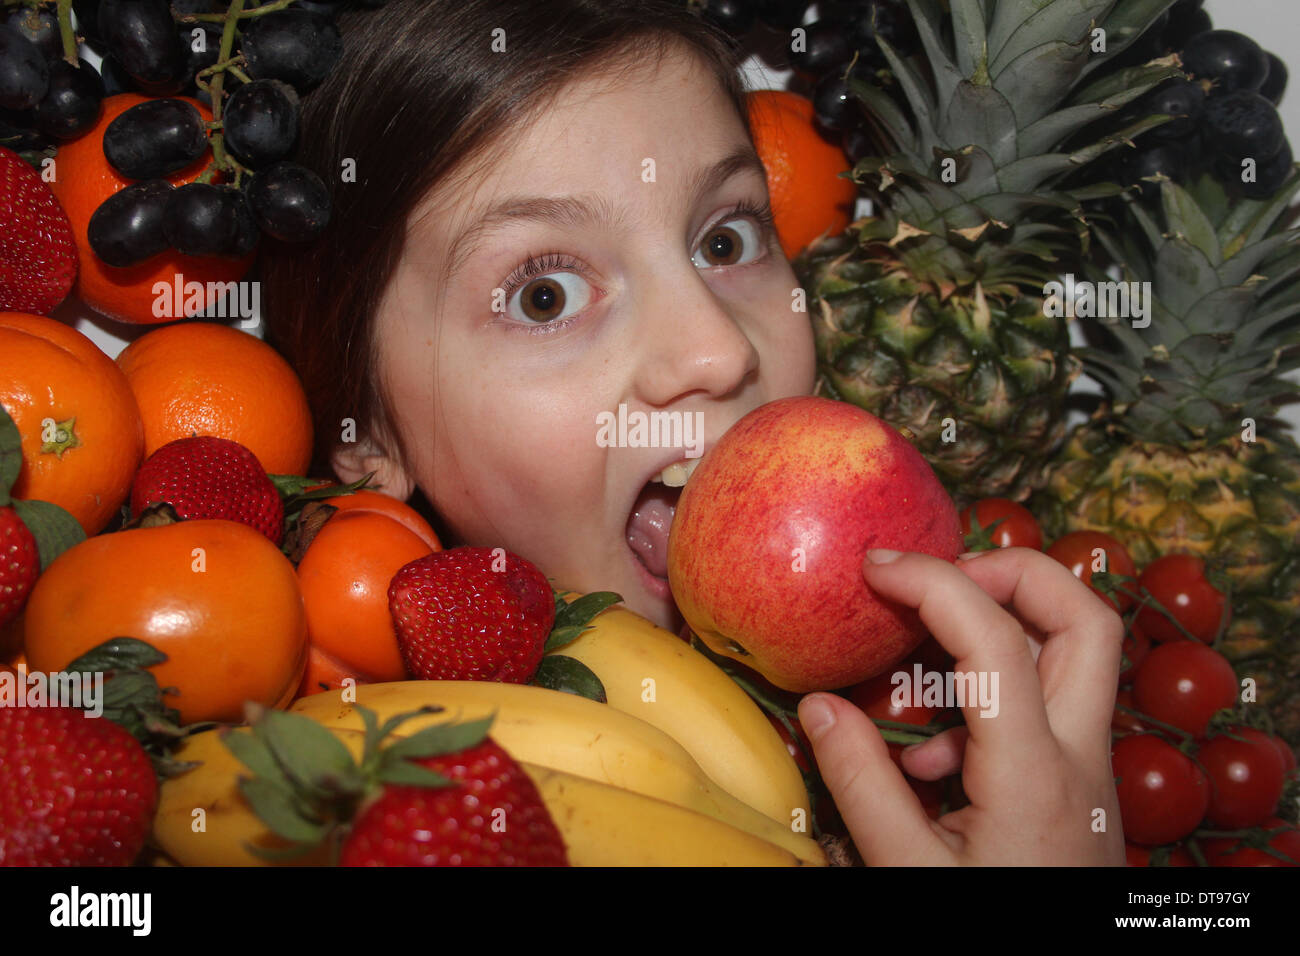 Los jóvenes caucásicos cara de la niña rodeada de frutales y hortalizas, comiendo una manzana, cinco al día, Inglaterra, Reino Unido. Foto de stock